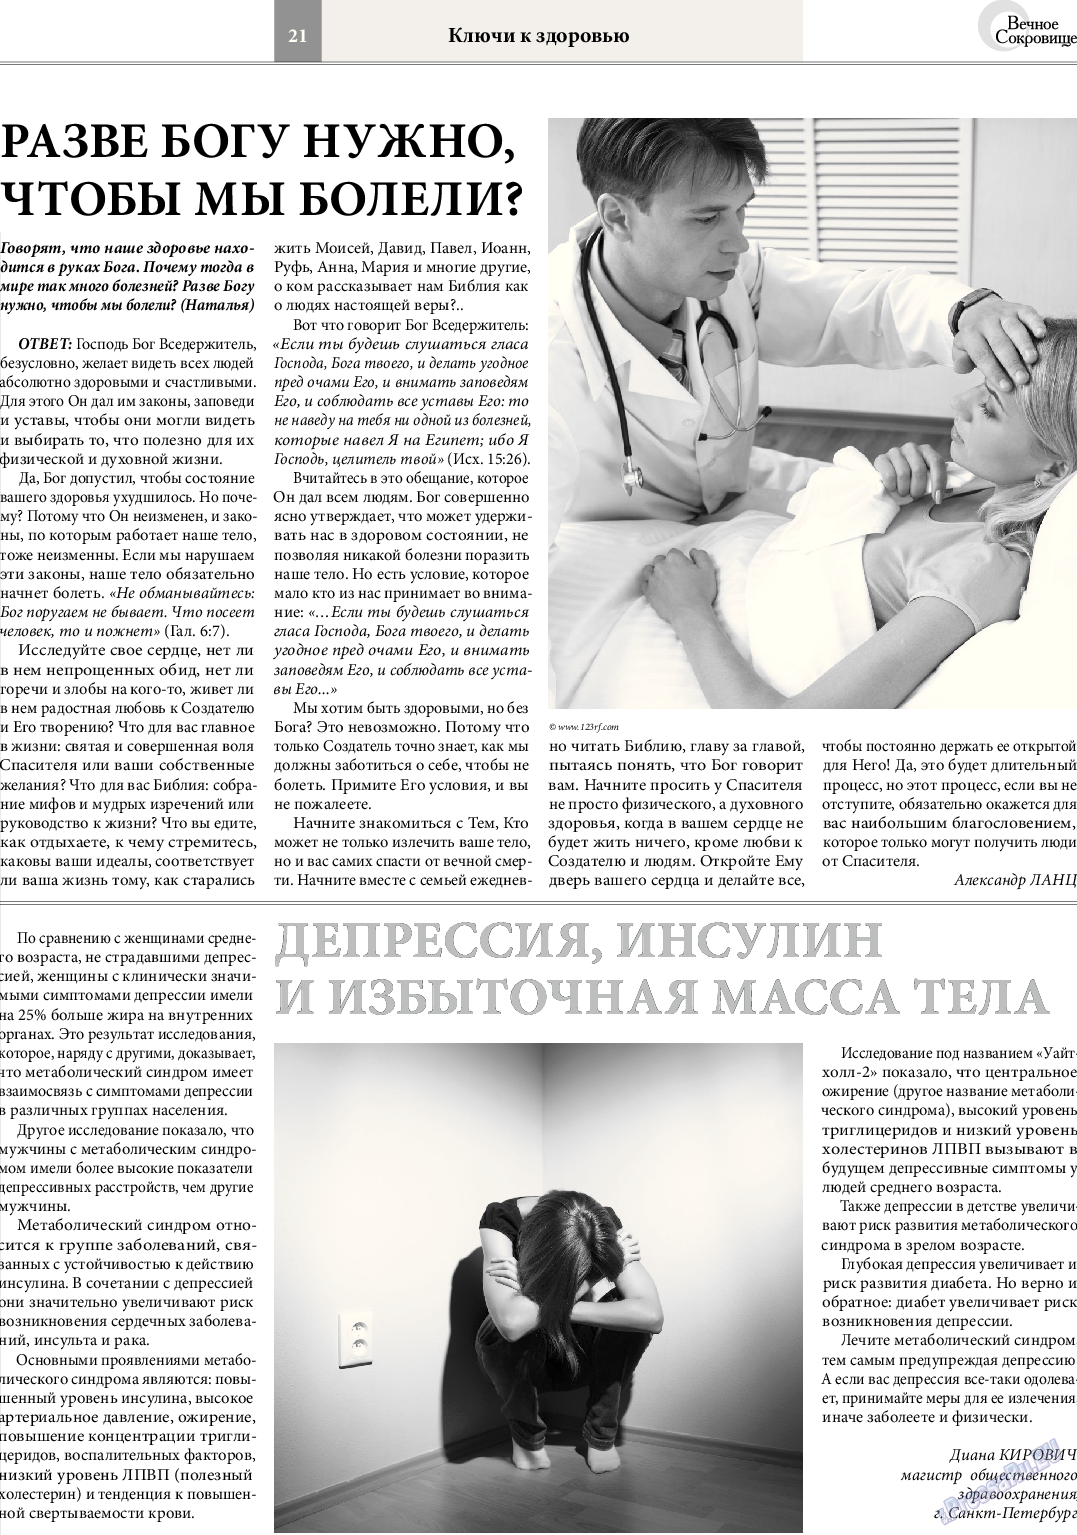 Вечное сокровище, газета. 2014 №2 стр.21